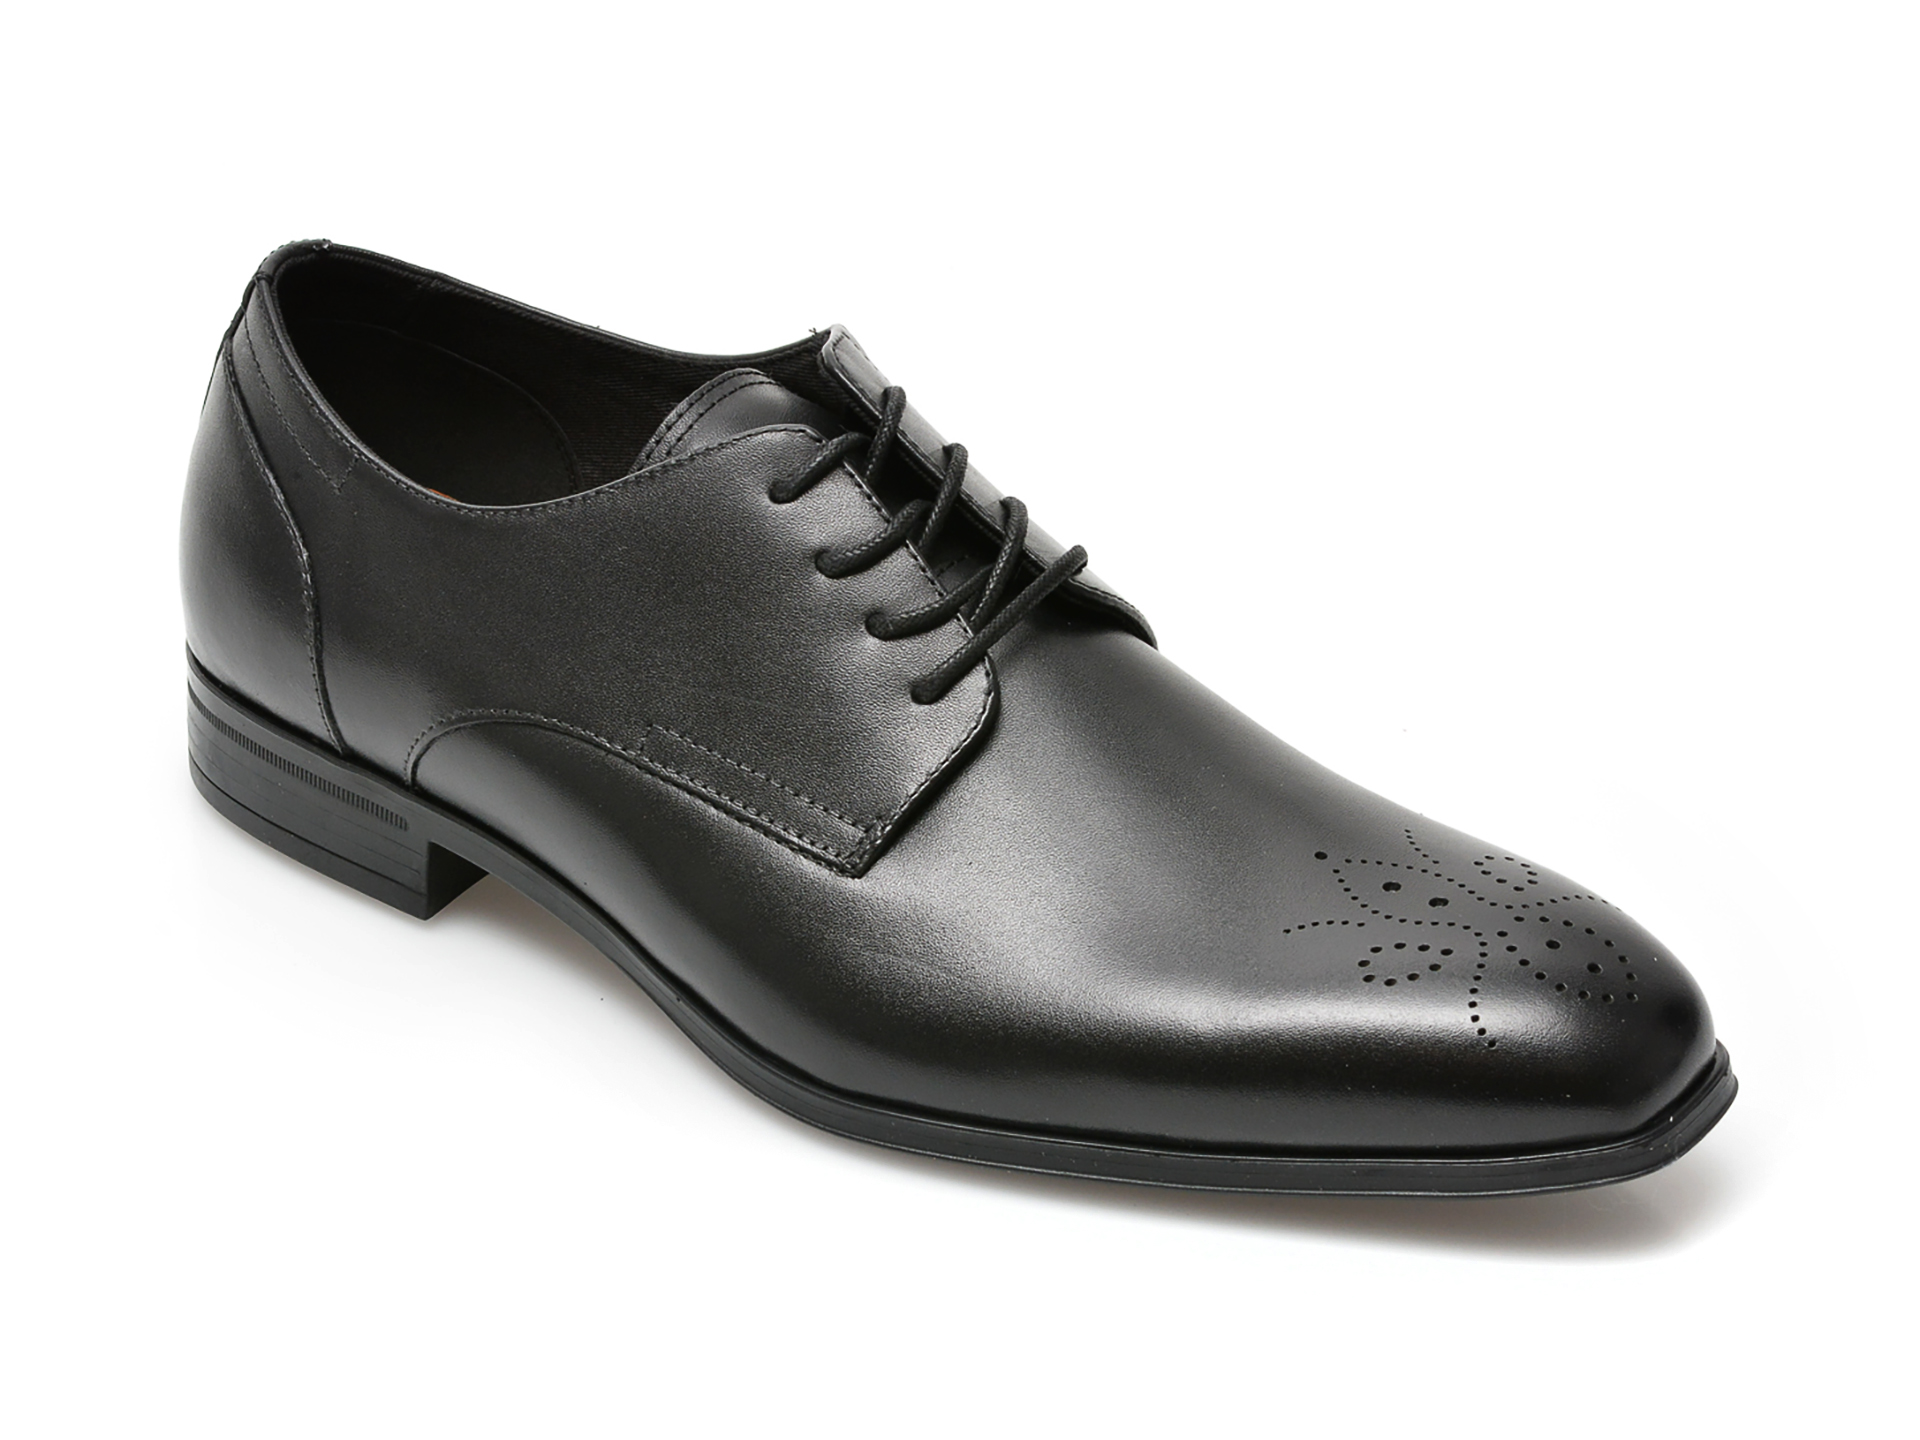 Pantofi ALDO negri, REYES001, din piele naturala Aldo